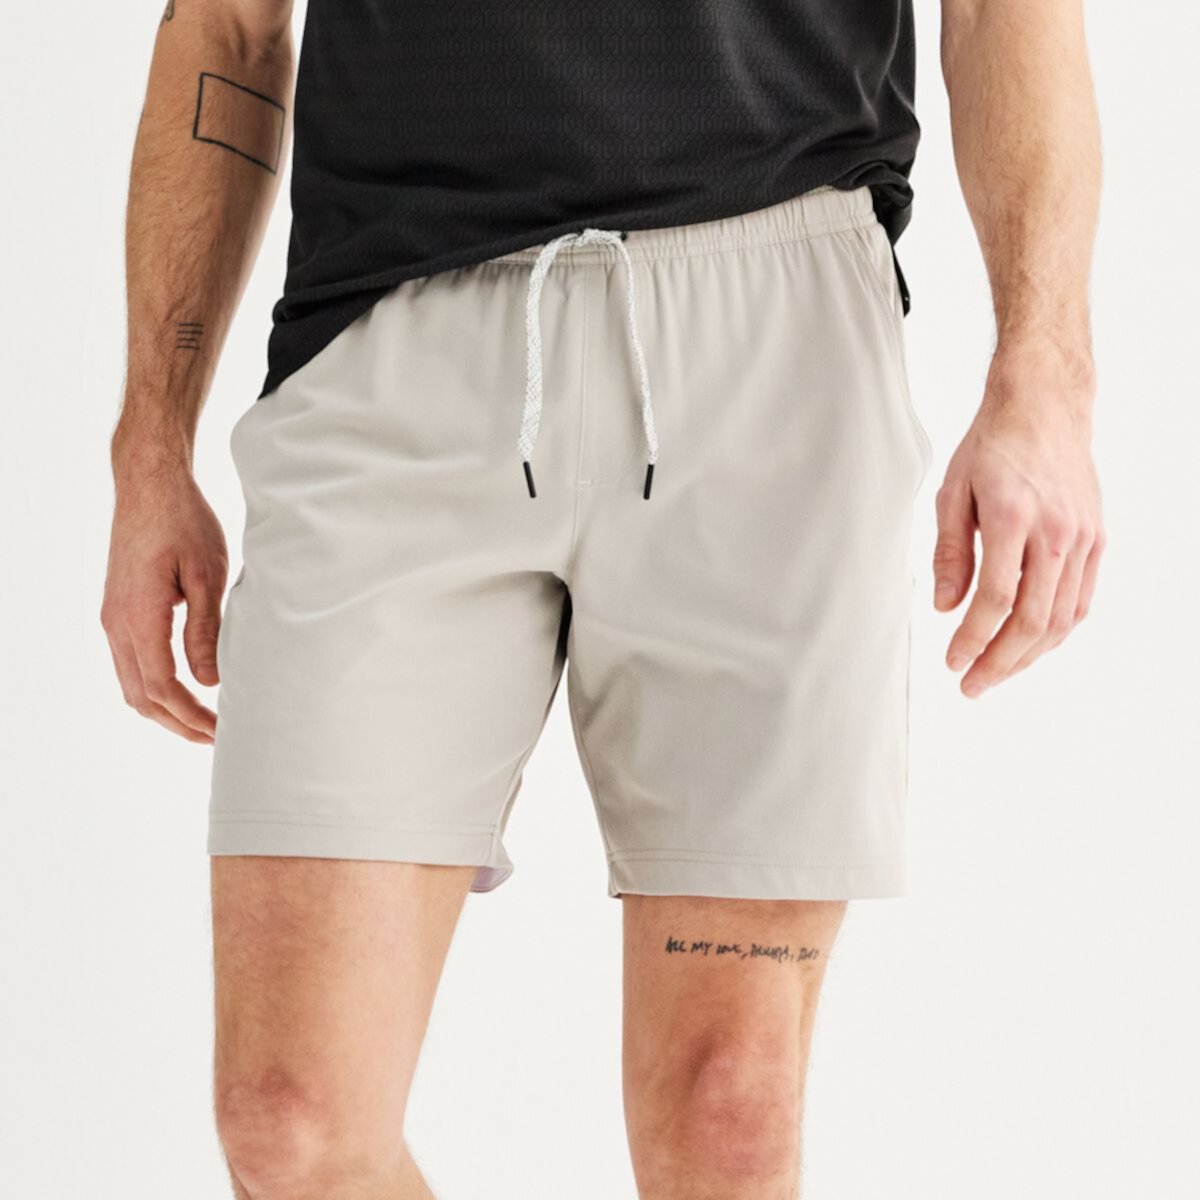 Мужские шорты 7 дюймов FLX Dynamic на эластичной подкладке FLX